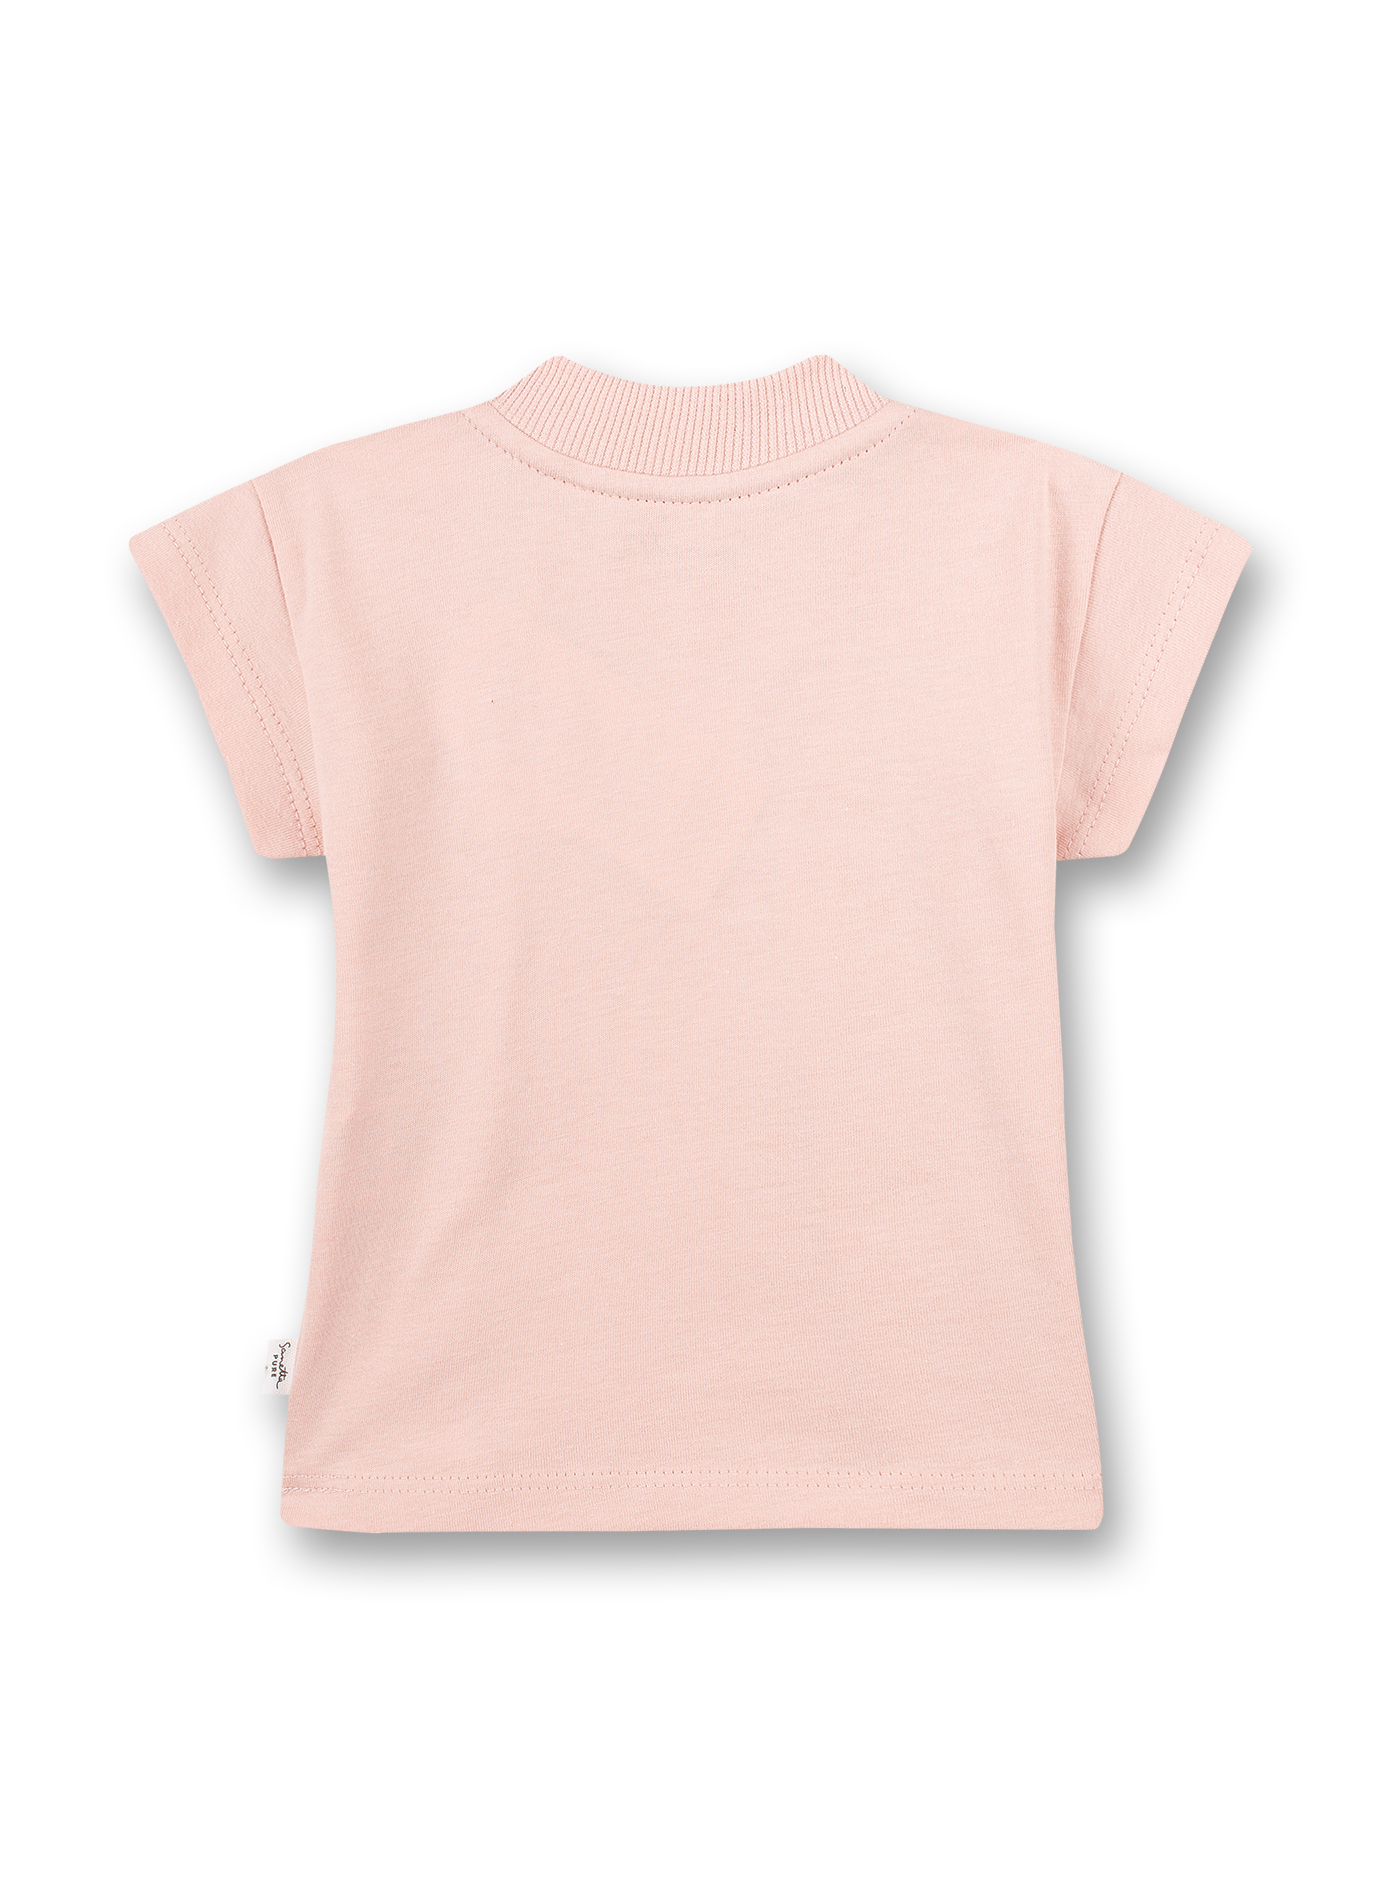 Mädchen T-Shirt Rosa 